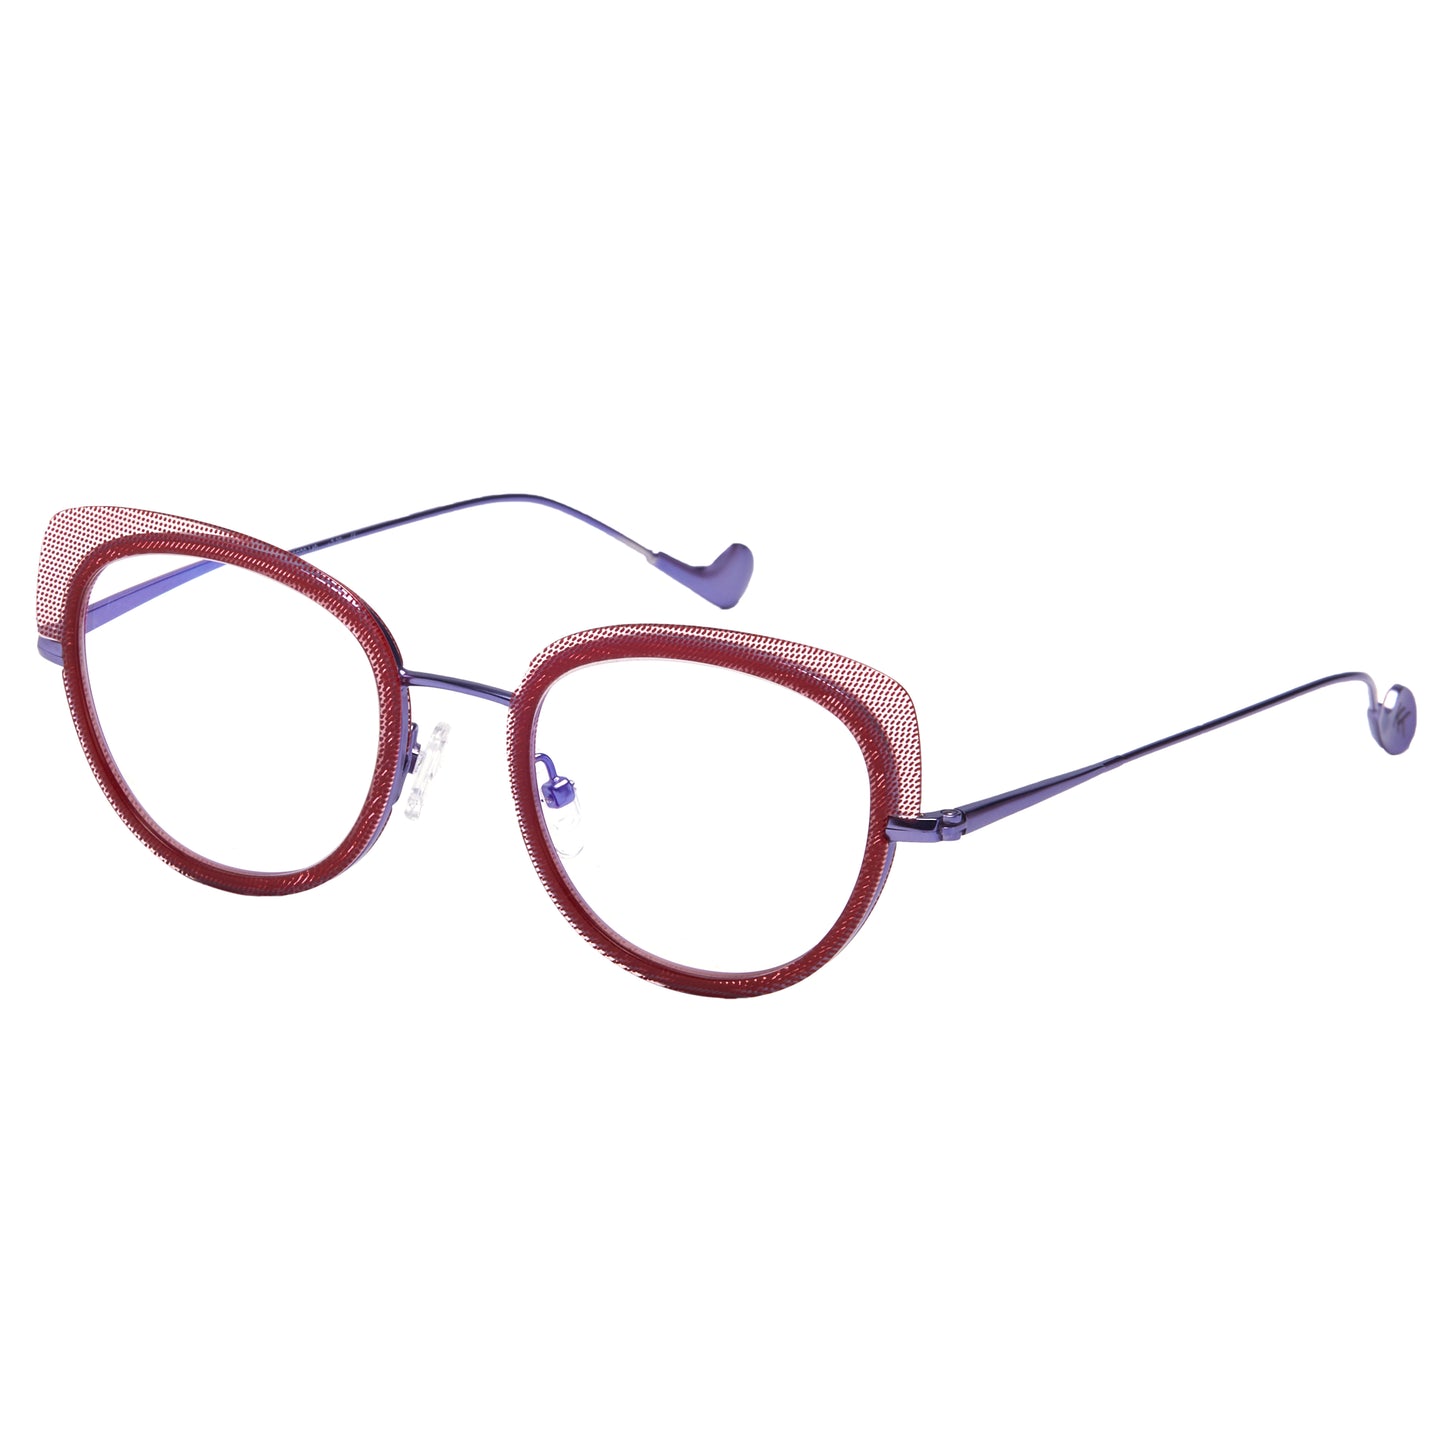 Mokki Gentle Cat-Eye sunglasses for women in purple from the side